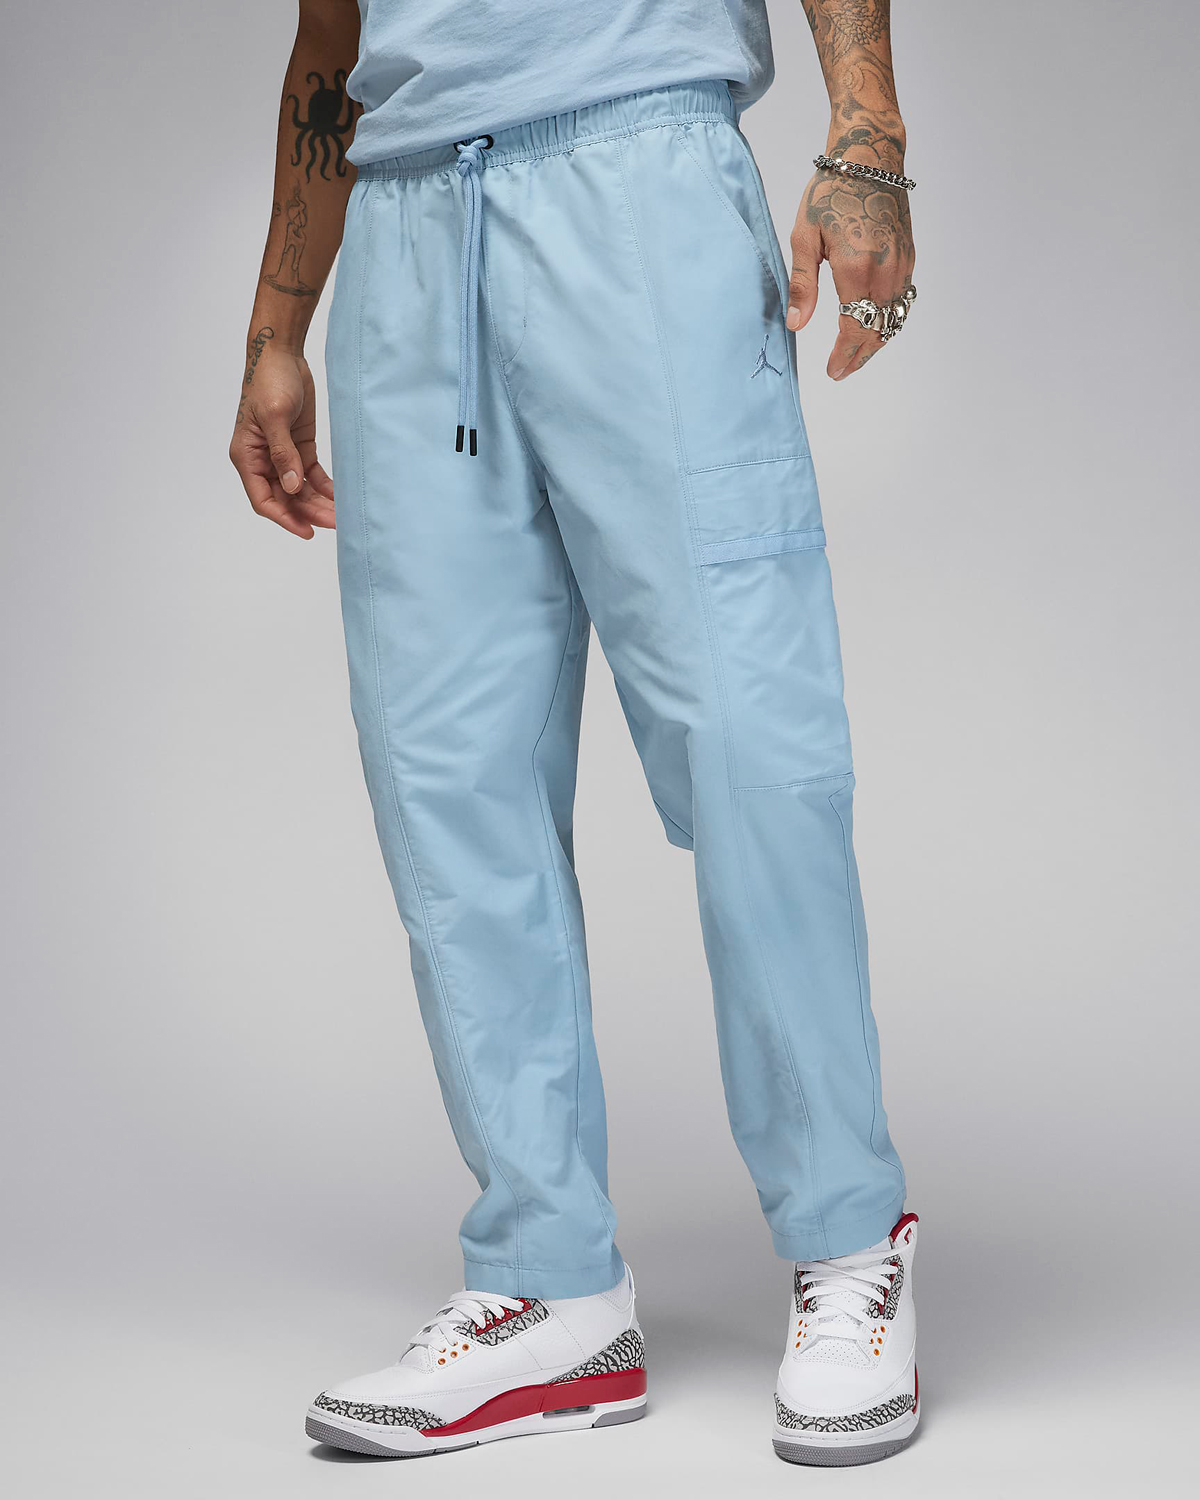 Jordan-Essentials-Woven-Pants-Blue-Grey-1